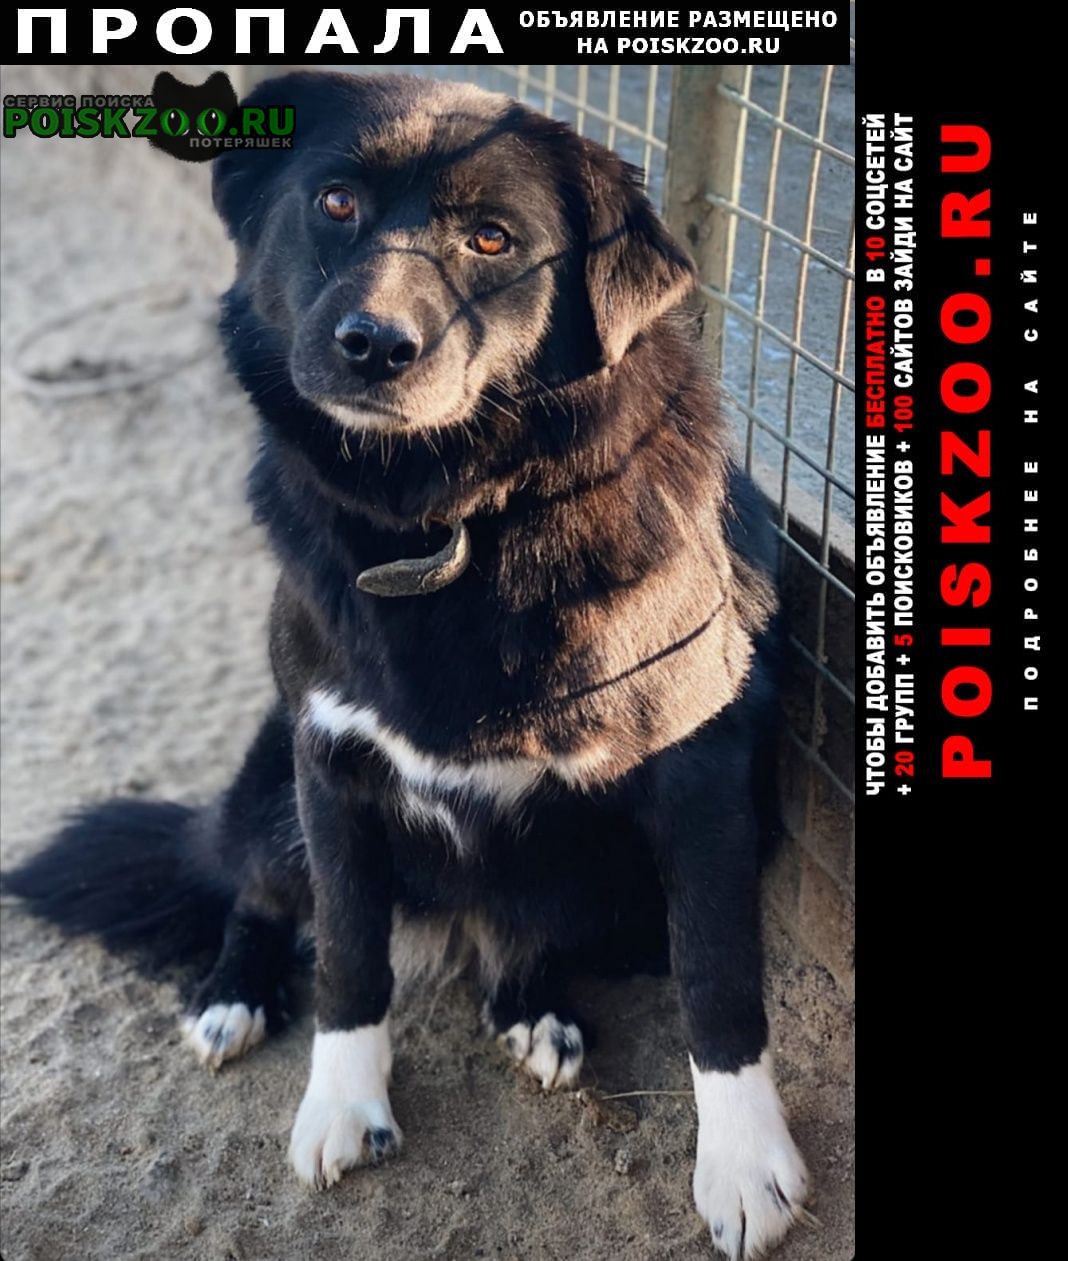 Пропала собака долли в новокосино г. москвы Москва